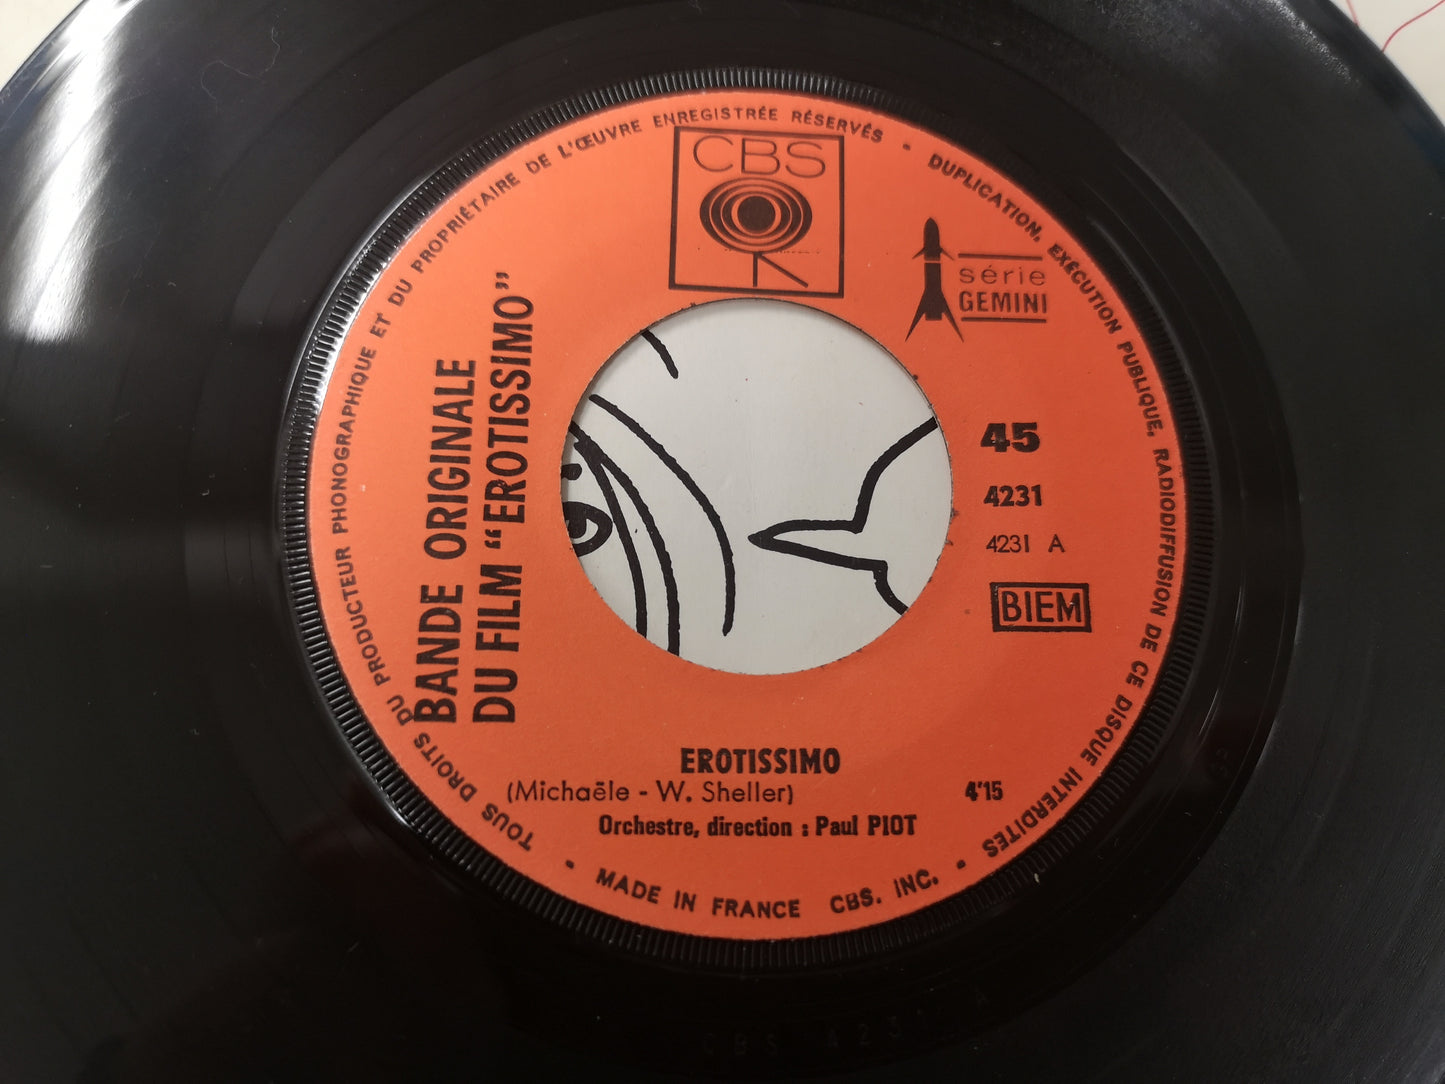 William Sheller "Erotissimo B.O.F." Orig France 1969 VG++/EX (7" EP)